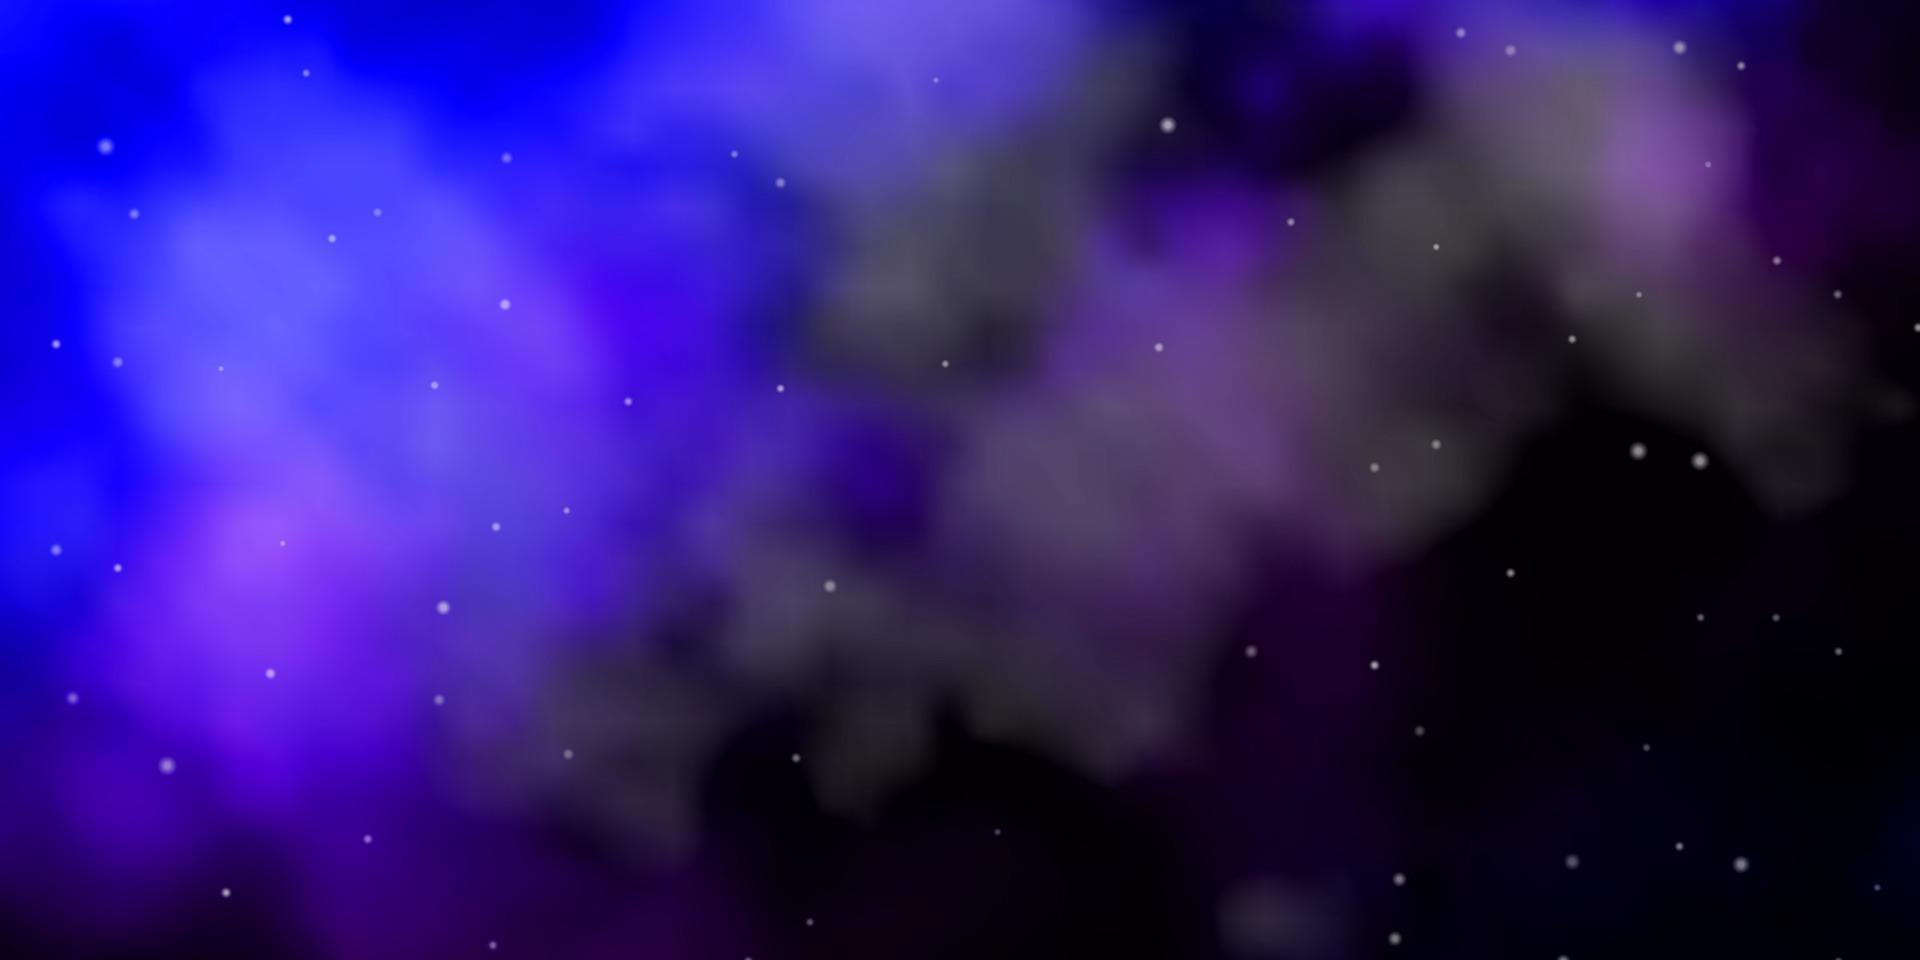 mörkrosa, blå vektormönster med abstrakta stjärnor. vektor